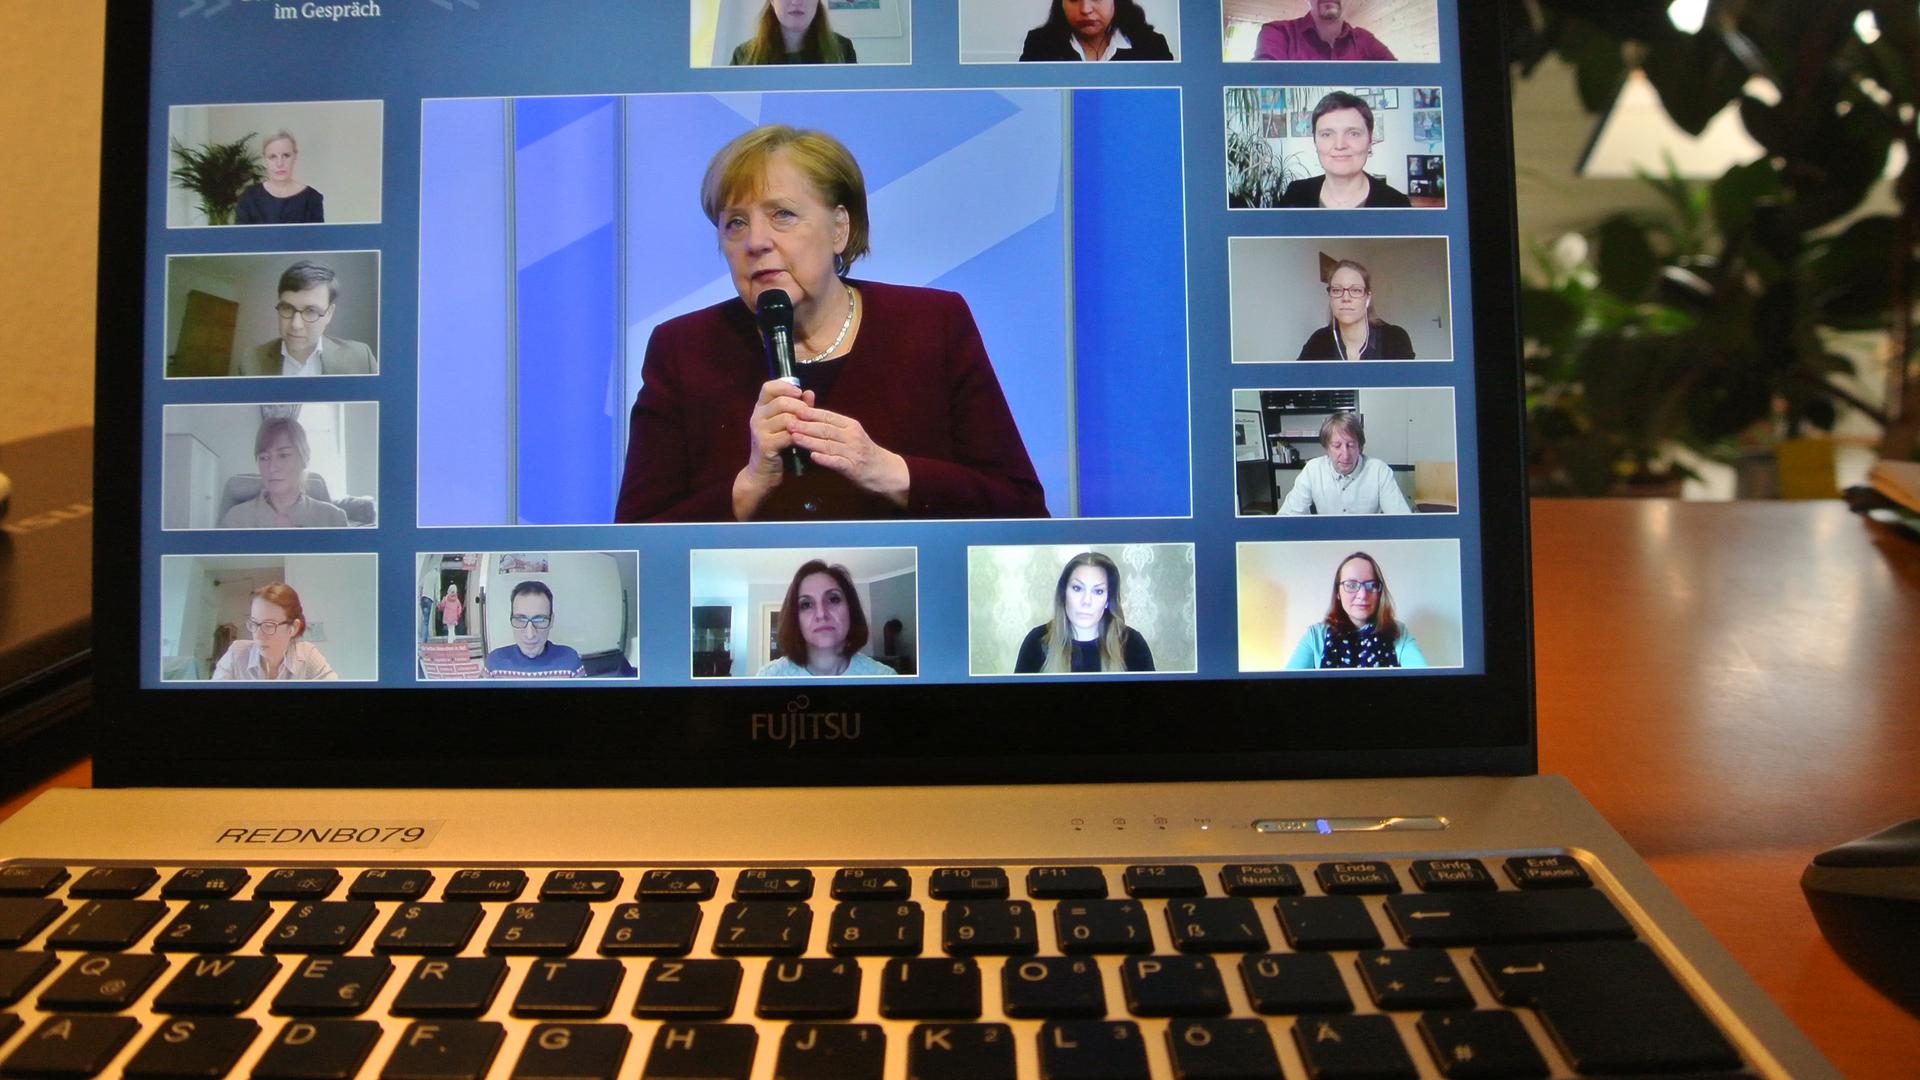 Im Gespräch, Liveschalte, Merkel